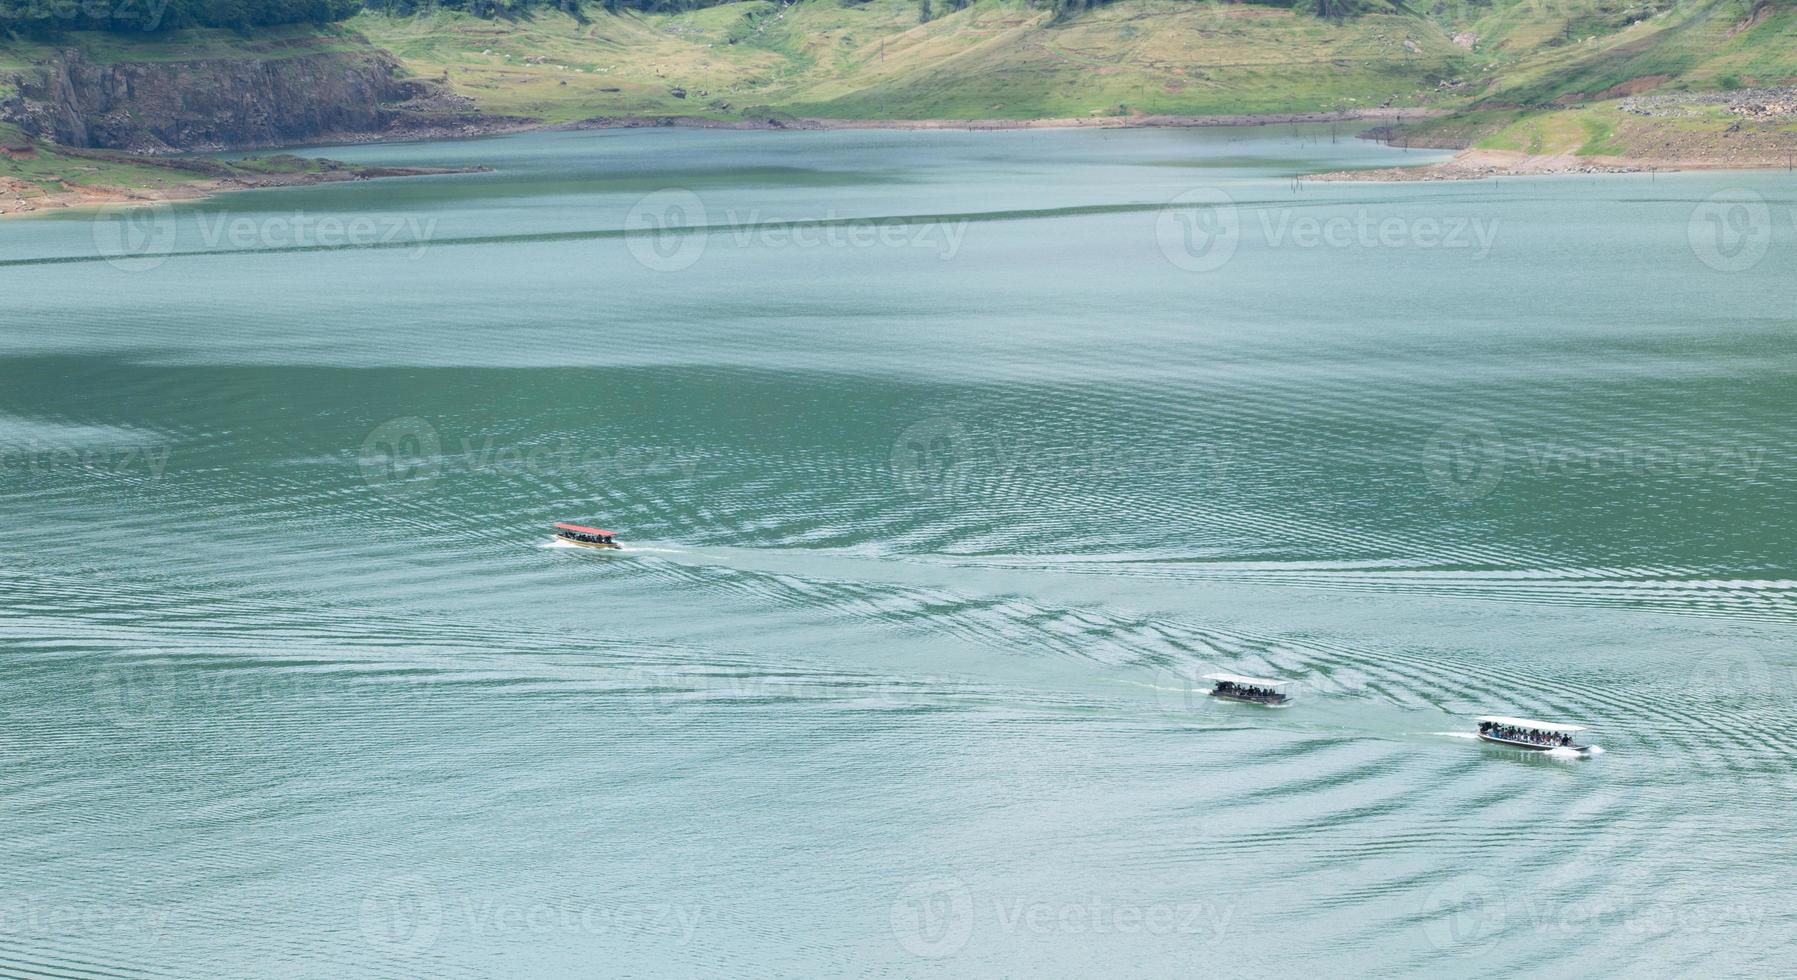 le bateau se déplace à la surface de l'eau à la vitesse des vagues provoquant le mouvement du bateau. photo